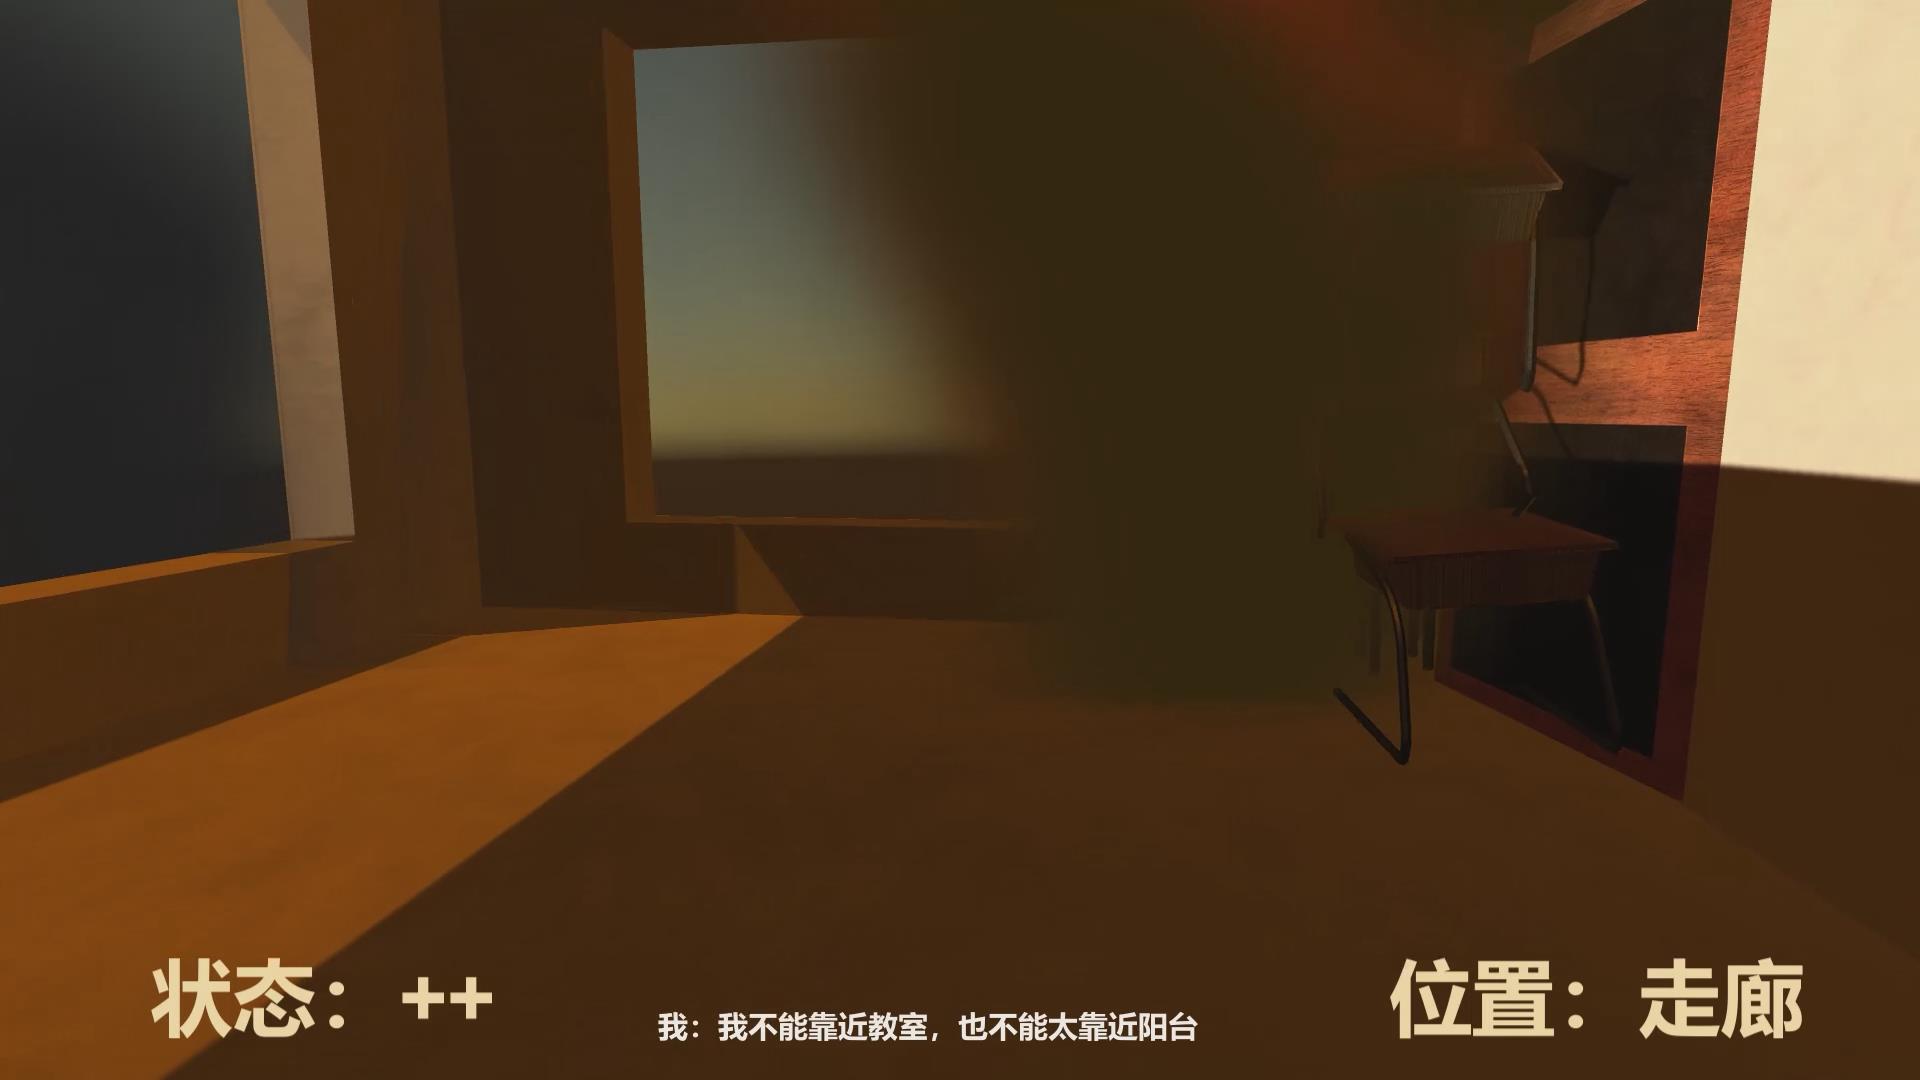 虚拟现实与游戏竞赛作品——基于Unity3D的校园火灾逃生演习平台